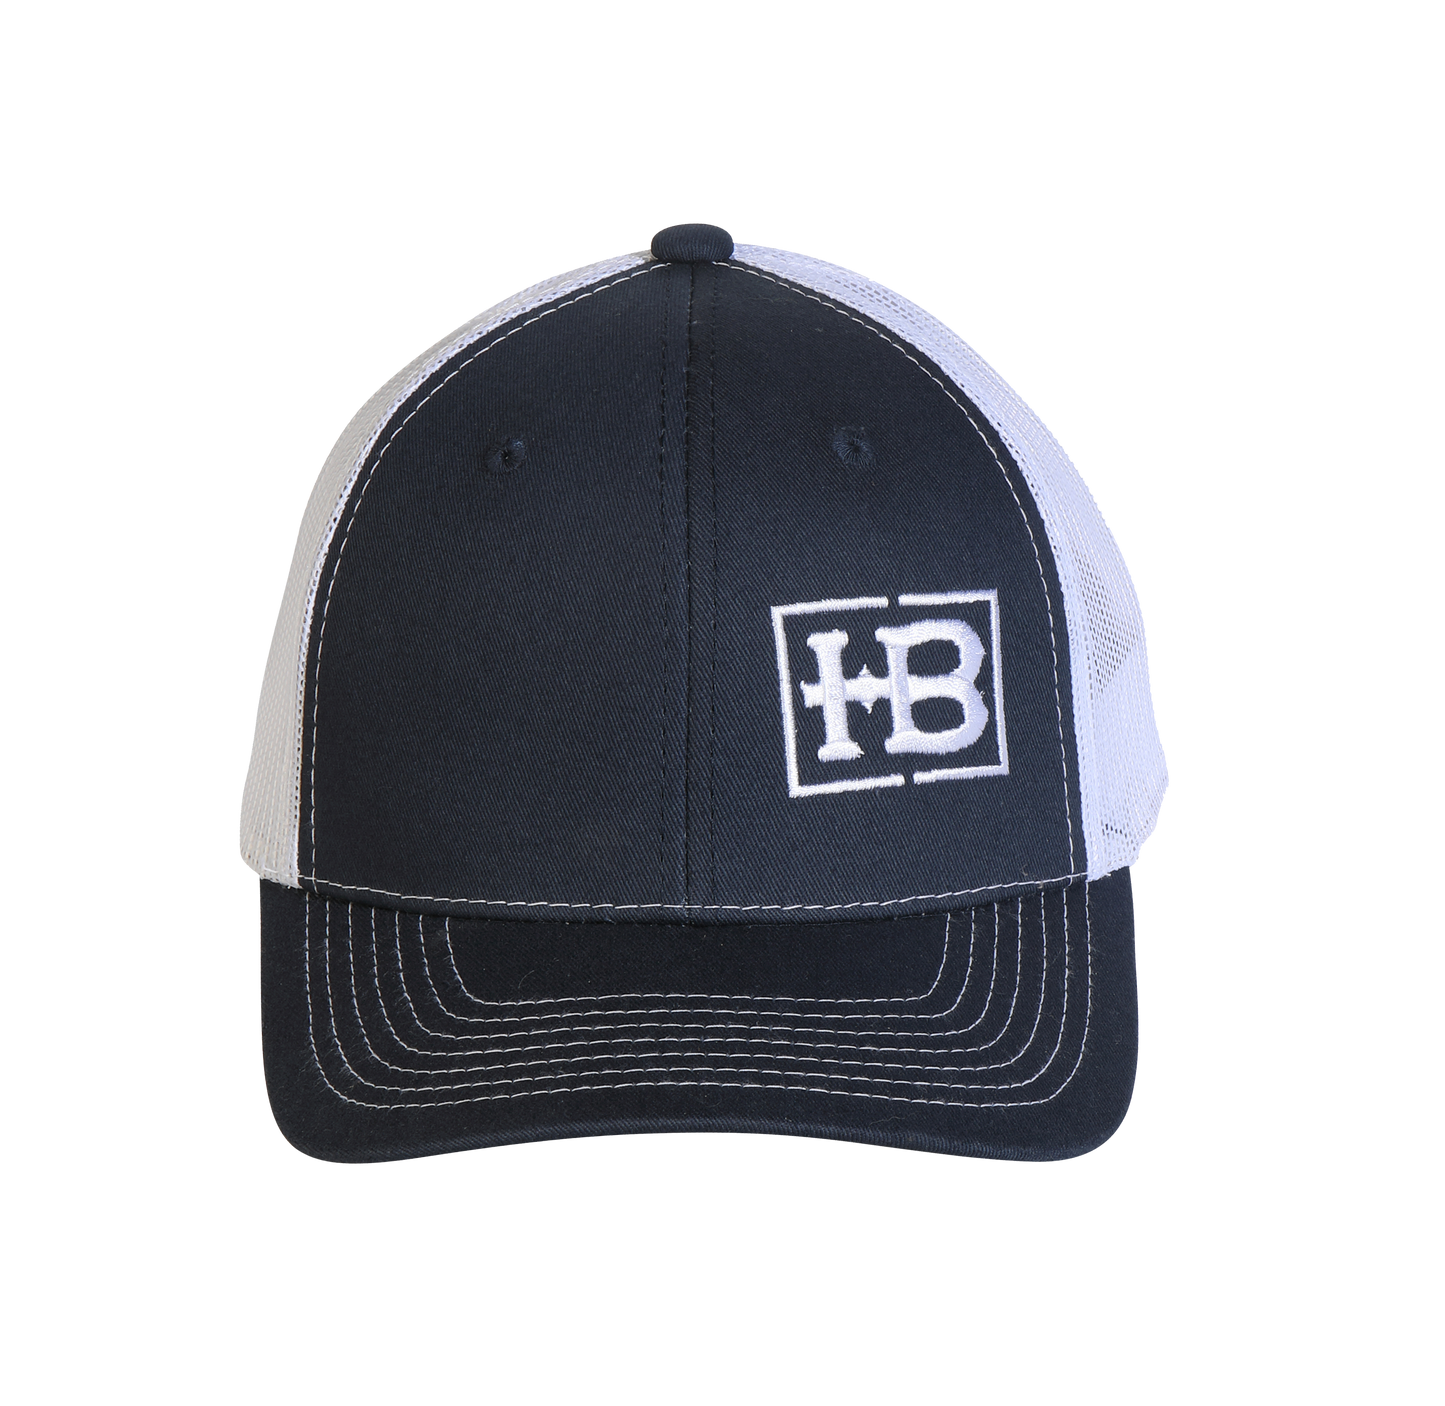 HB Navy/White Structured Hat